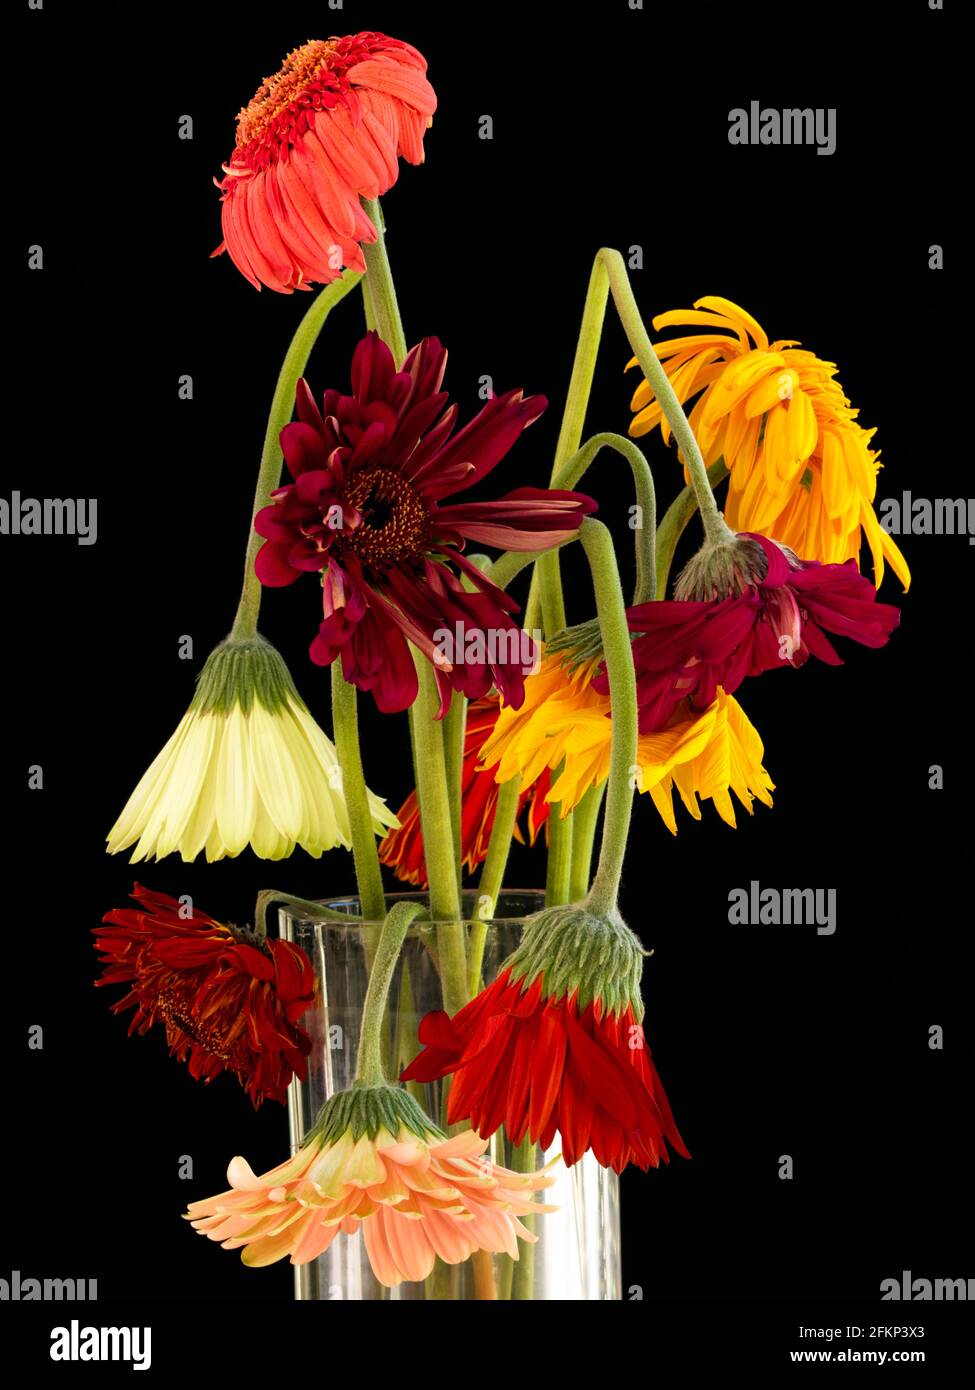 Ein forales Arrangement von Gerbera, die verwelkt sind. Mehrfarbige Blumenarrangements von Gerbera (Asteraceae), die in tropischen Regionen beheimatet ist Stockfoto